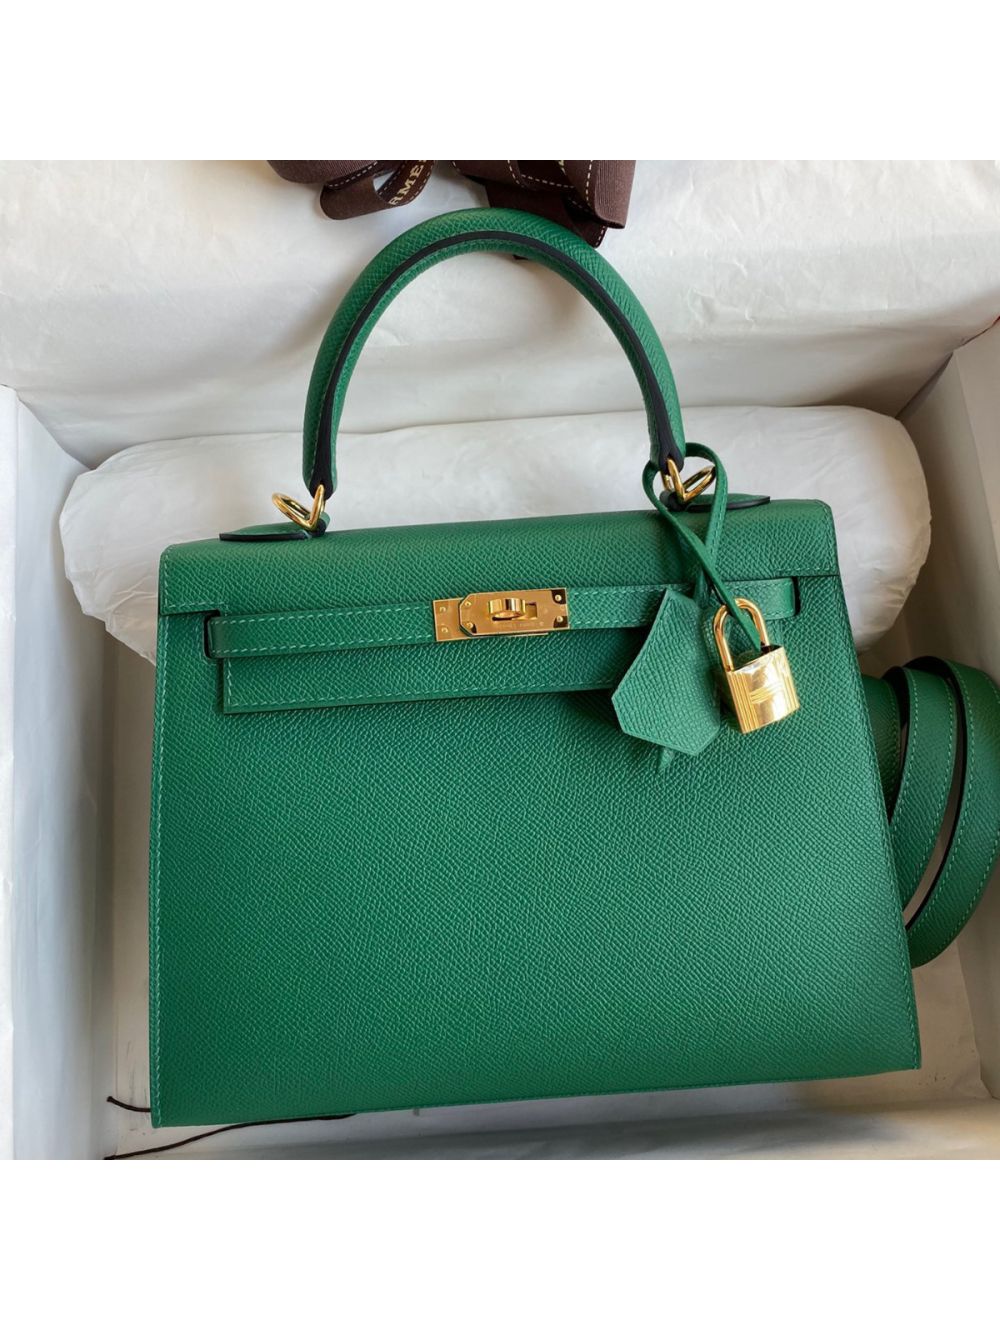 Replica Hermes Kelly 25cm Sellier Bag in Vert Amande Epsom